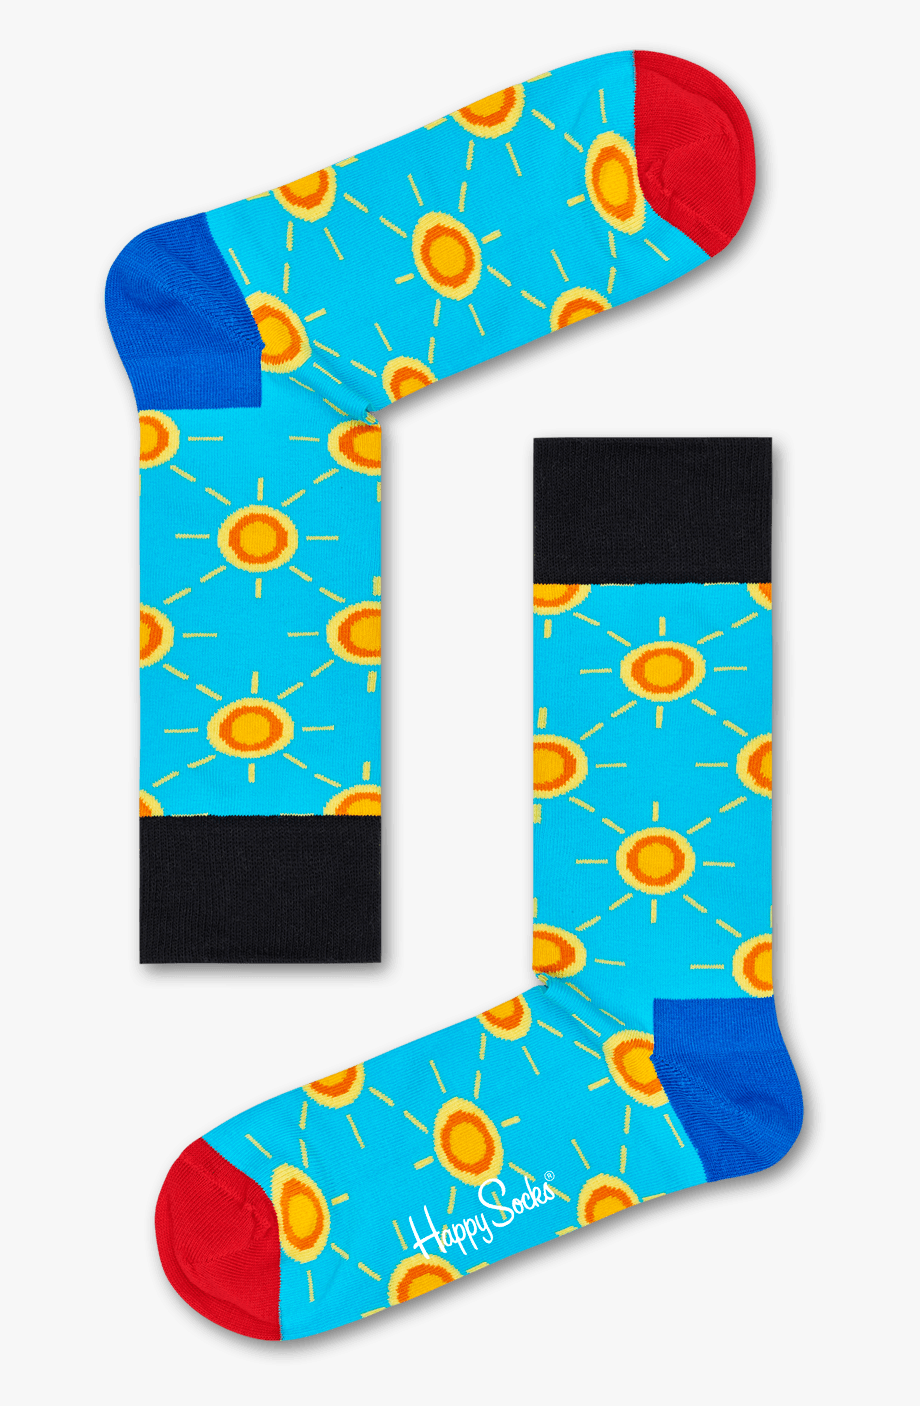 Socks clipart patterned.